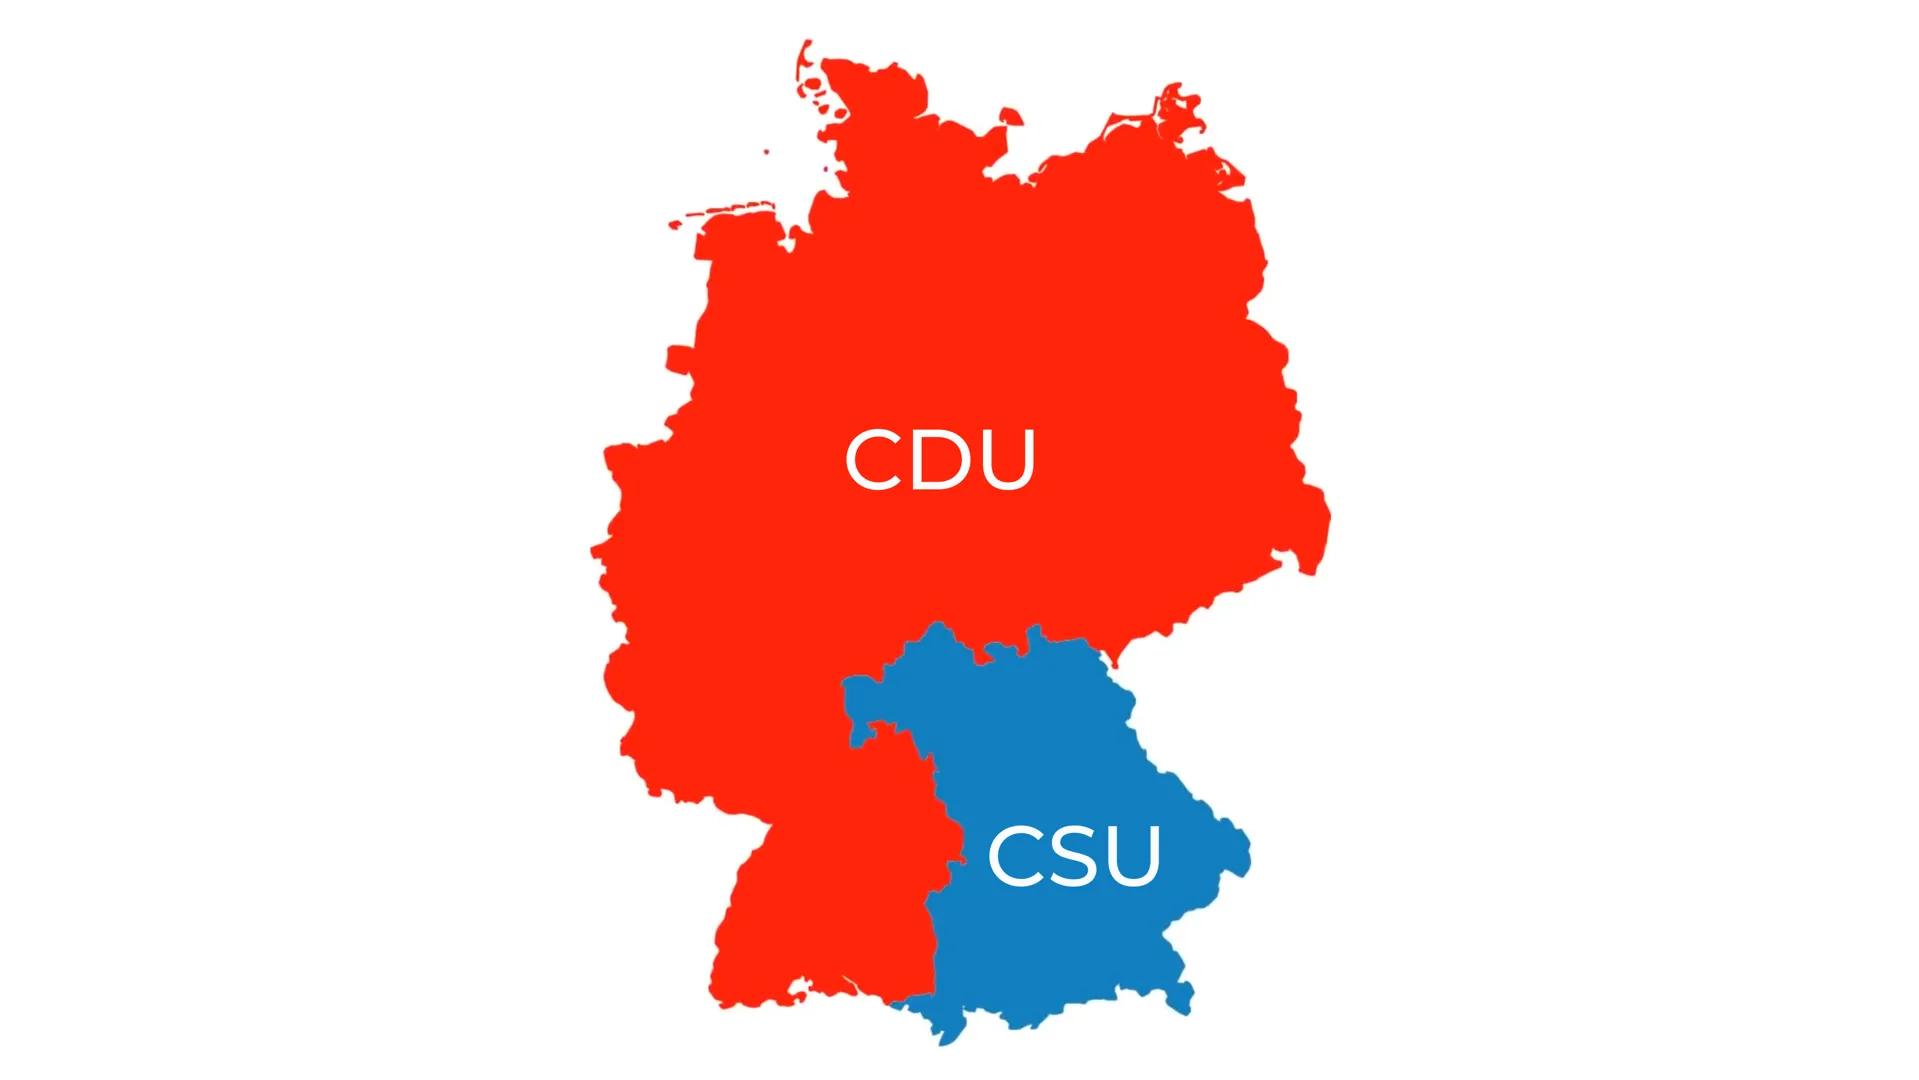 CDU & CSU
Die "größte" Partei Deutschlands VERLAUF
Was euch erwartet
Wer sind CDU & CSU?
Geschichte
Grundwerte
● Aktuelles
● Ziele
KAS Chris